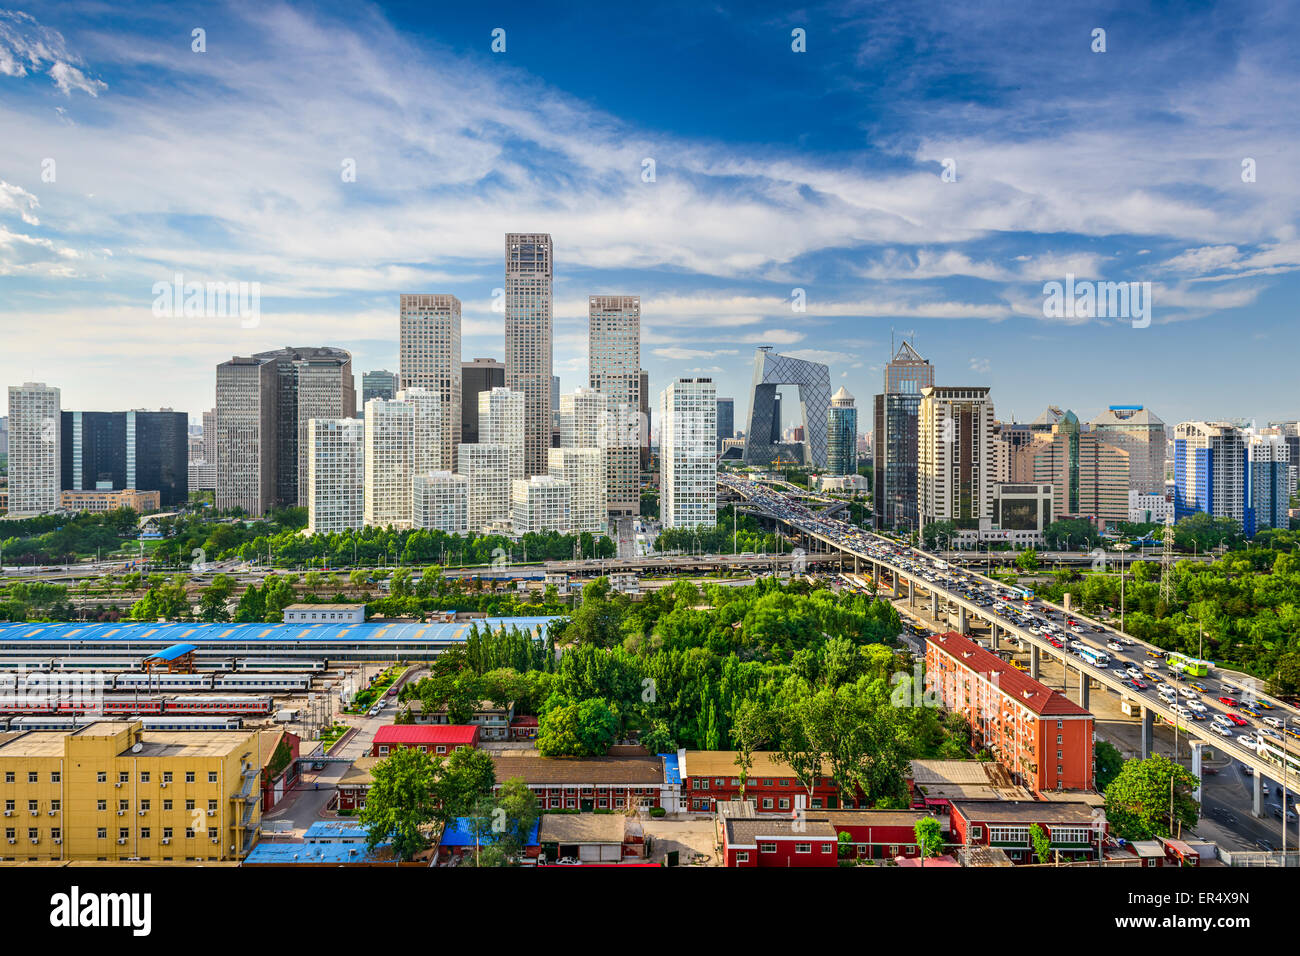 Beijing, China CBD skyline. Stock Photo